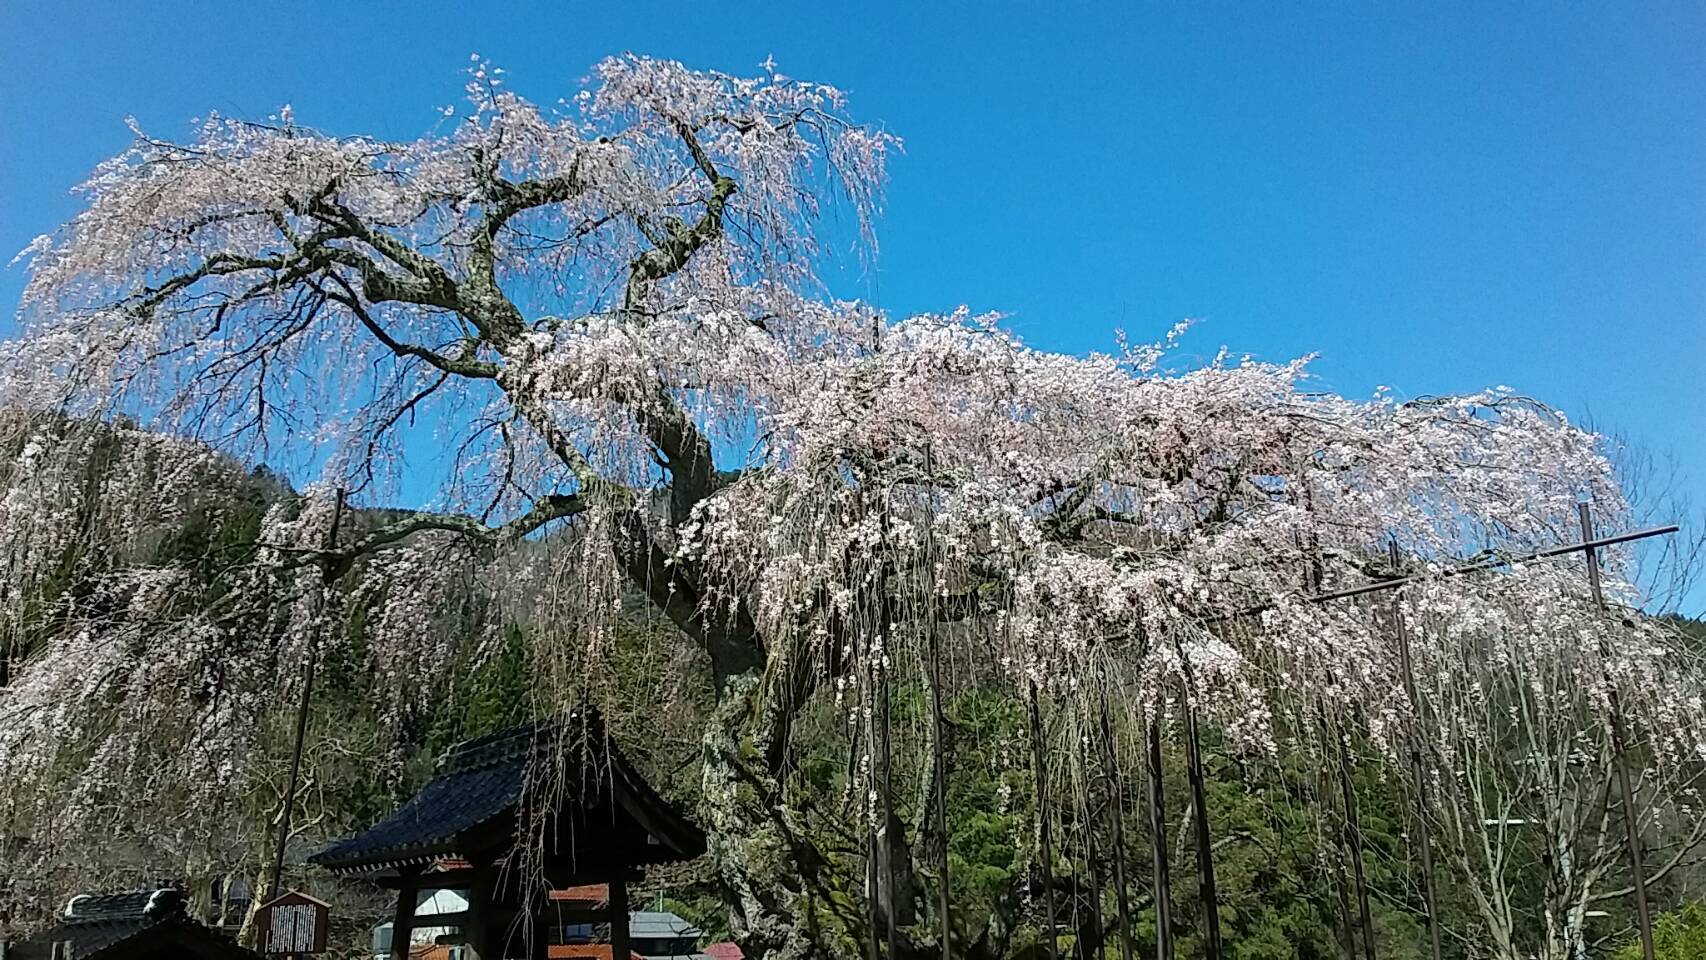 西日本一幹の太い 泰雲寺 7分咲き 3 25日 朝野家スタッフのblog